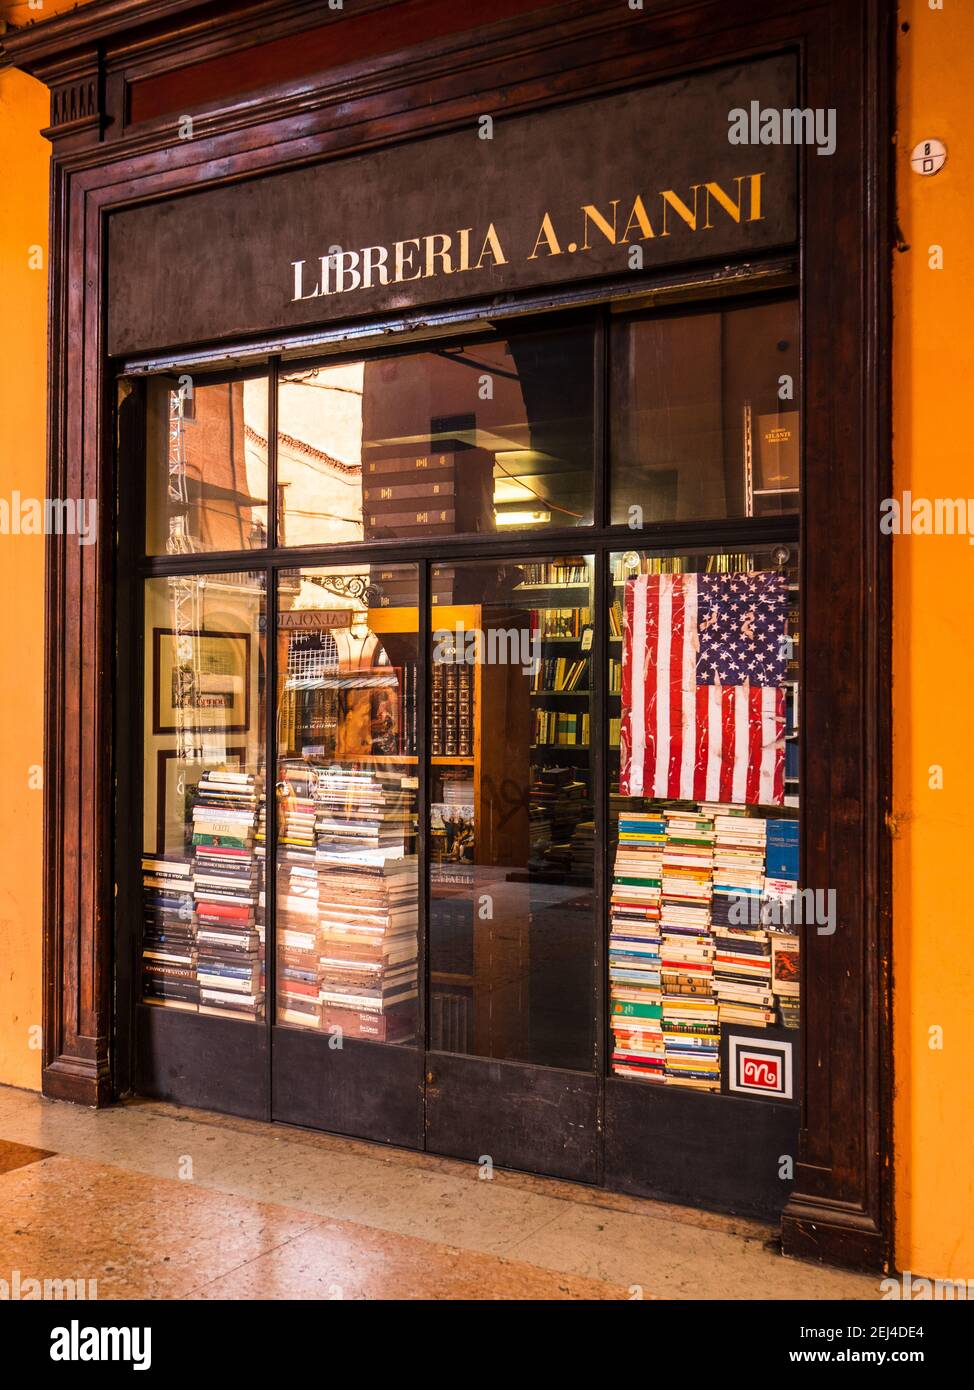 Libreria A.Nanni nella Galleria Cavour, una galleria commerciale nel centro medievale di Bologna con la libreria Libreria Nanni Foto Stock